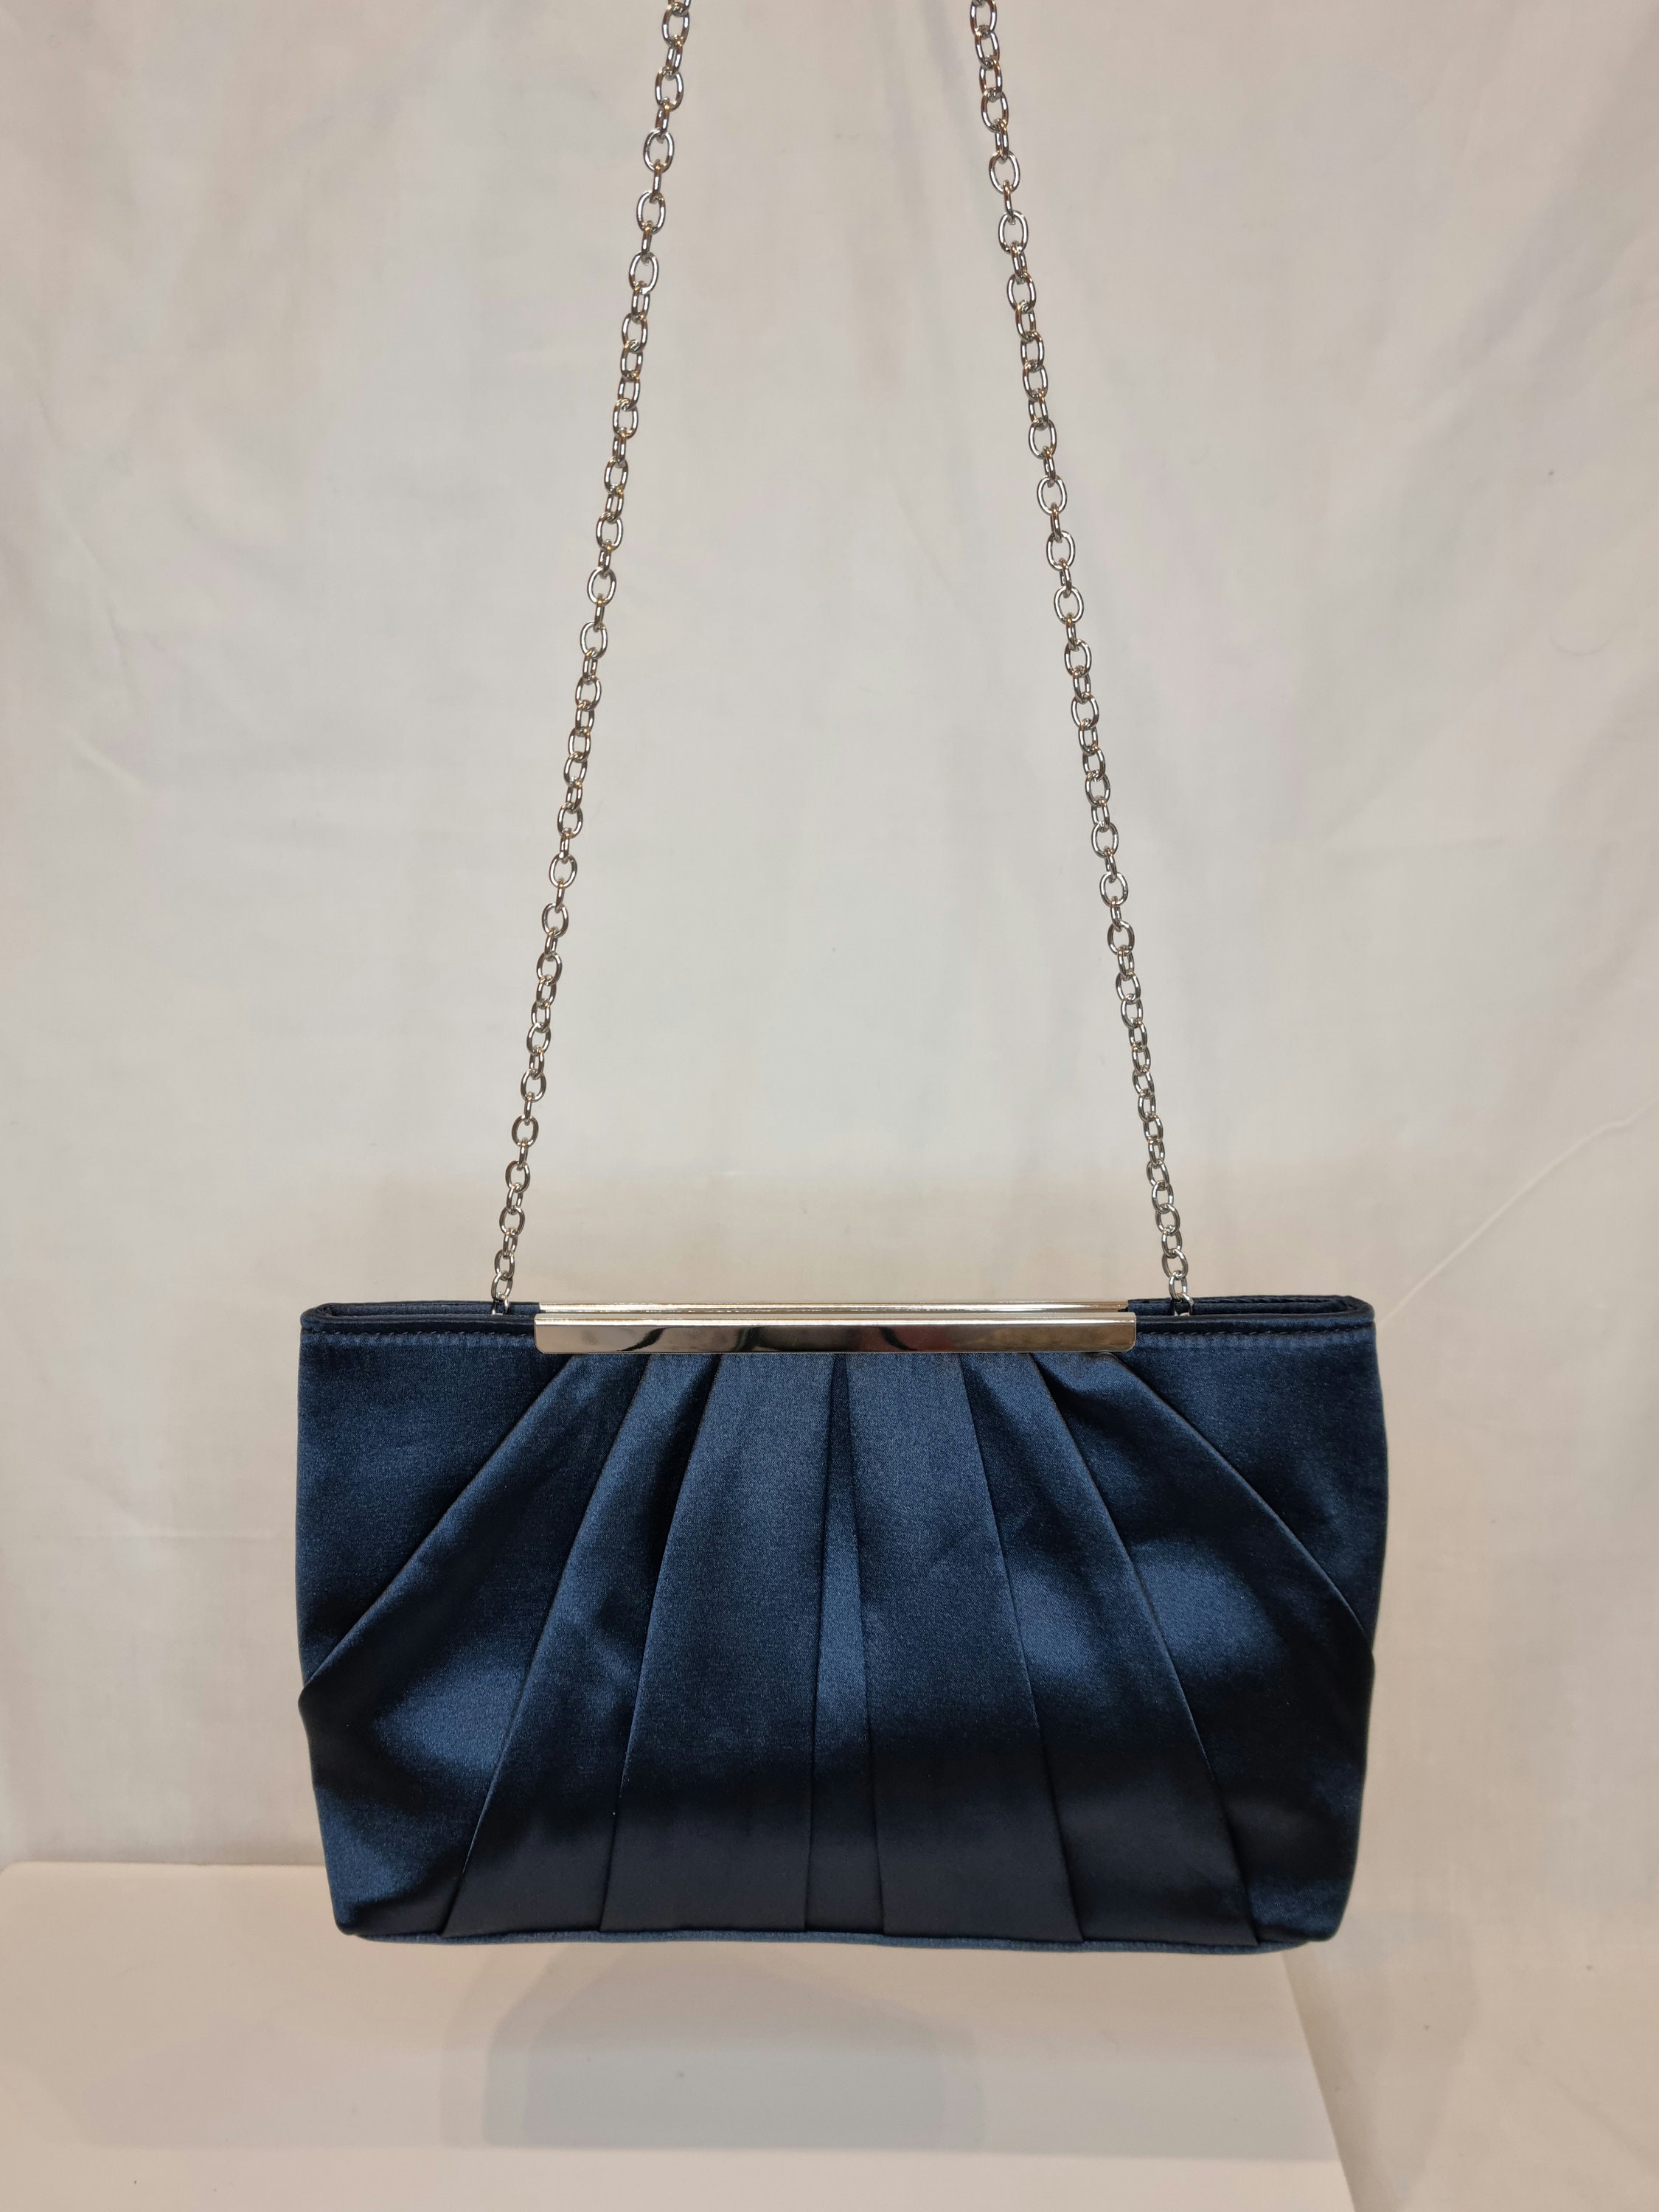 Navy Blue Satin Embellished Evening Clutch Bag - Etsy UK